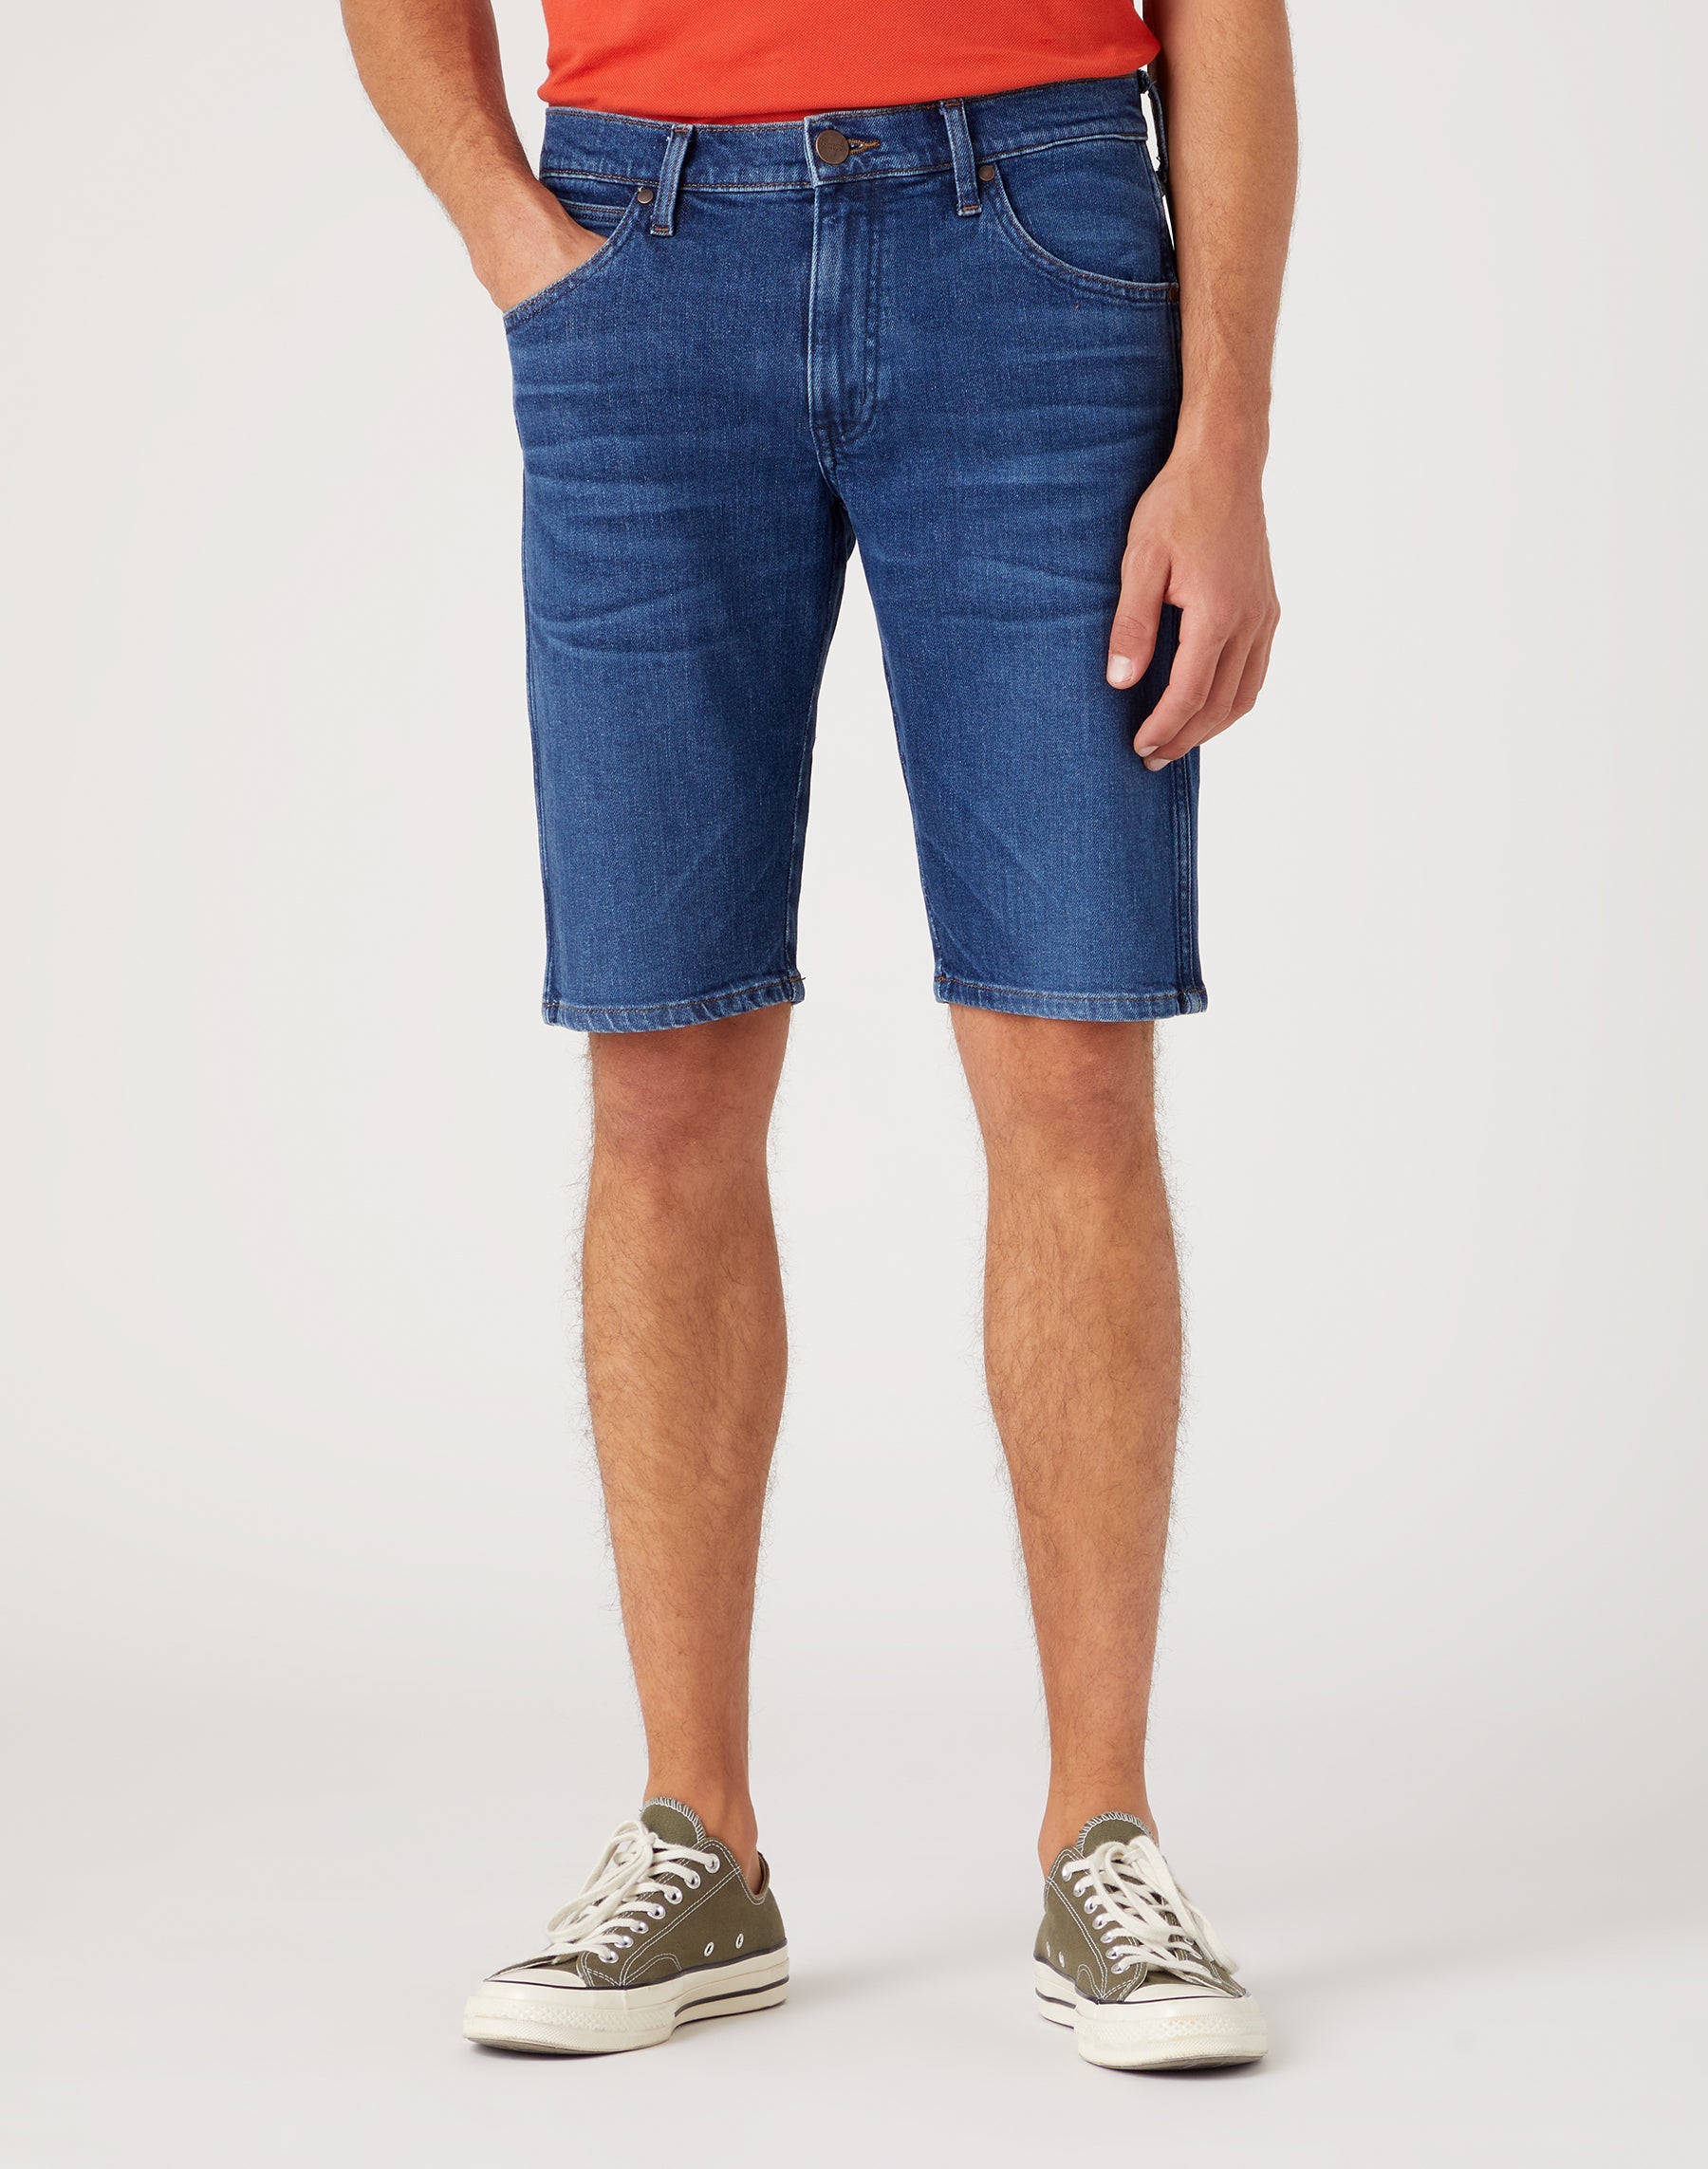 Colton Shorts in Desert Daze Jeansshorts Wrangler   